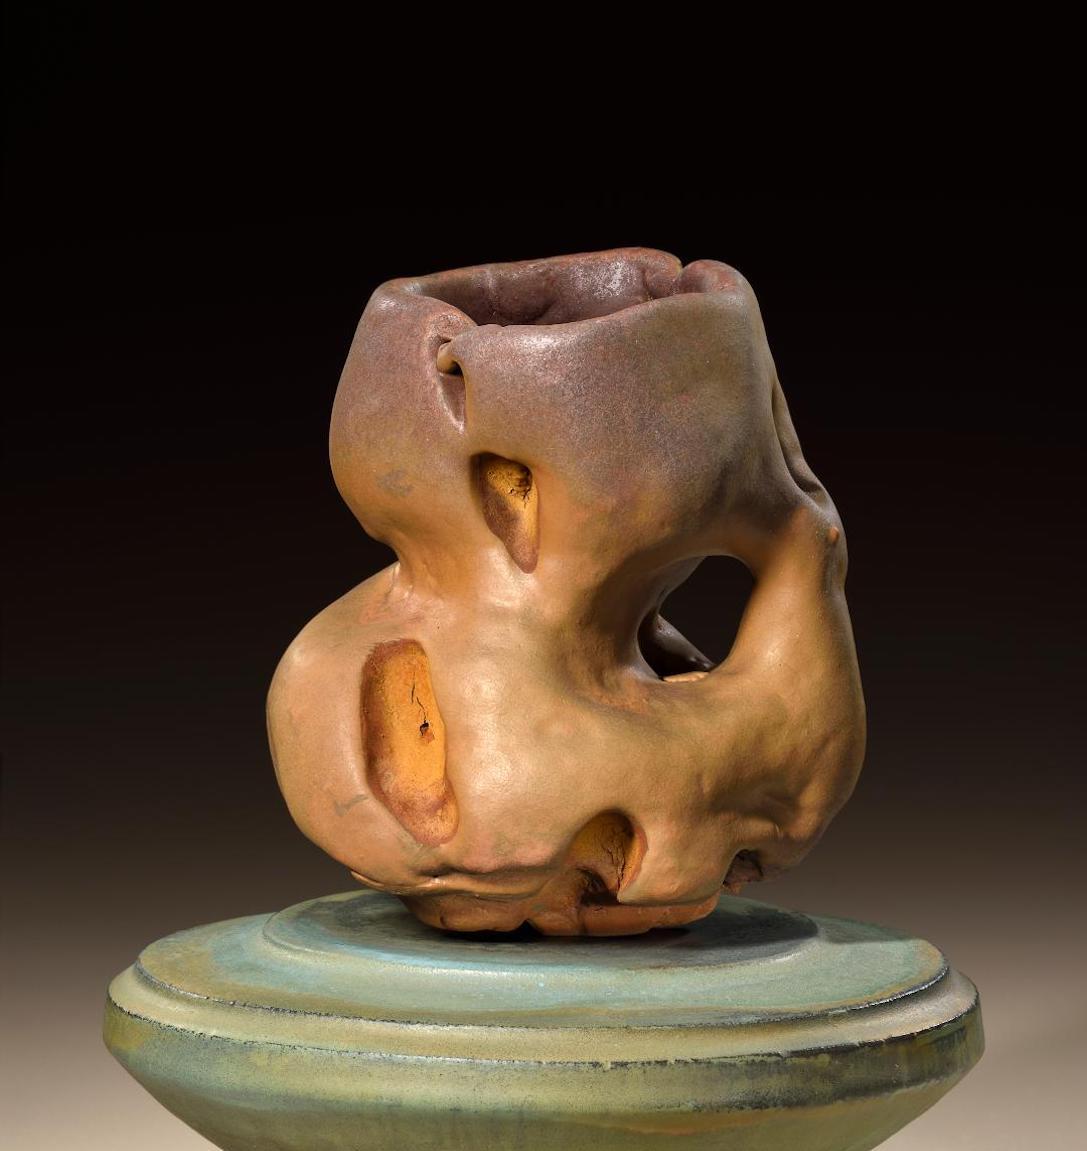 Modern Richard Hirsch Ceramic Scholar Rock Cup Sculpture #43, 2017 For Sale